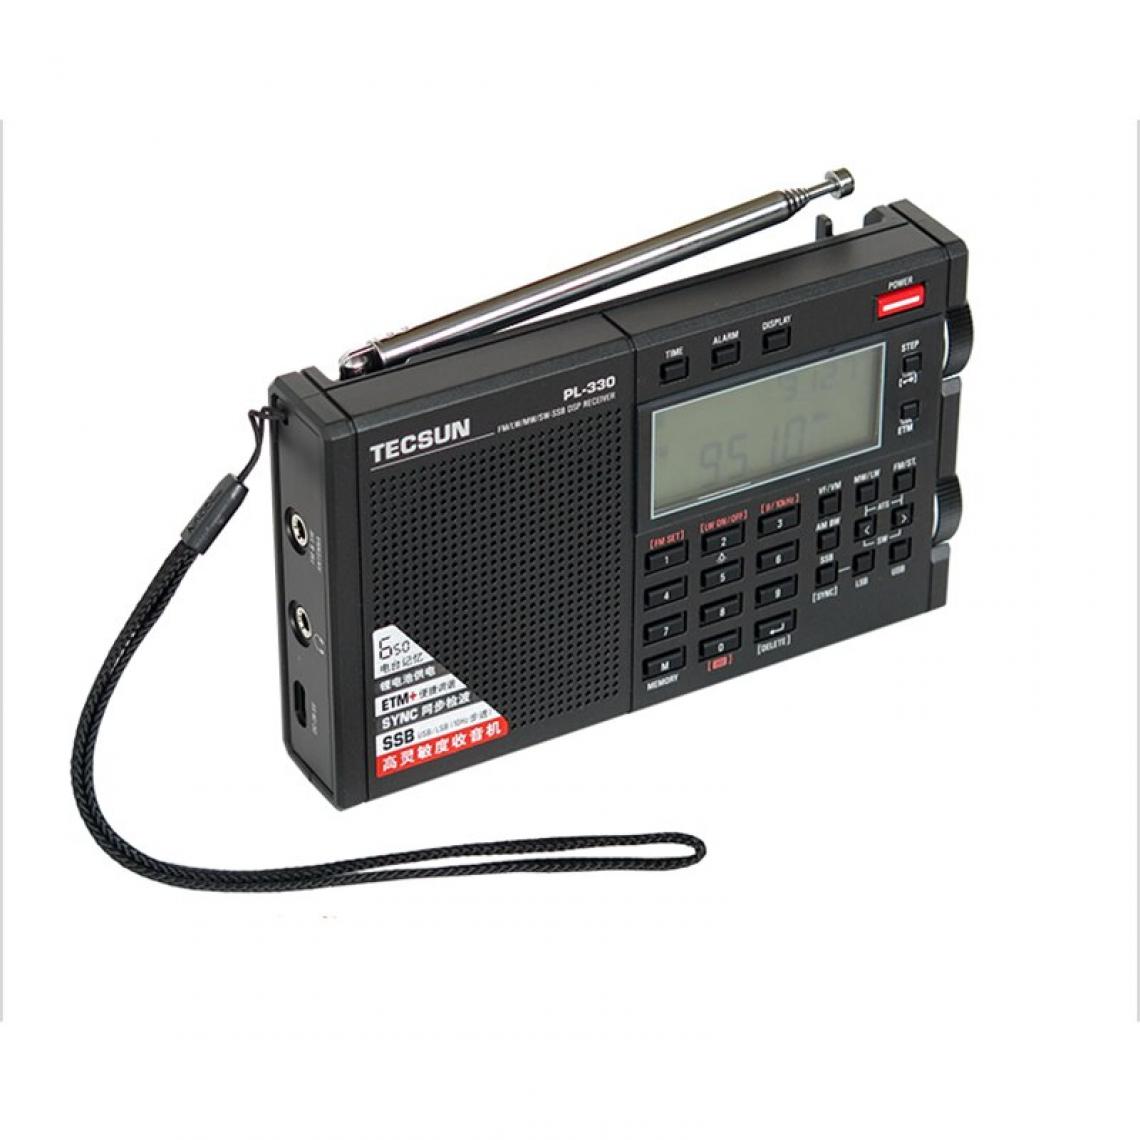 Universal - FMFM AM MW SW LW DSP récepteur radio SSB démodulation numérique stéréo radio I3 011 |(Le noir) - Radio